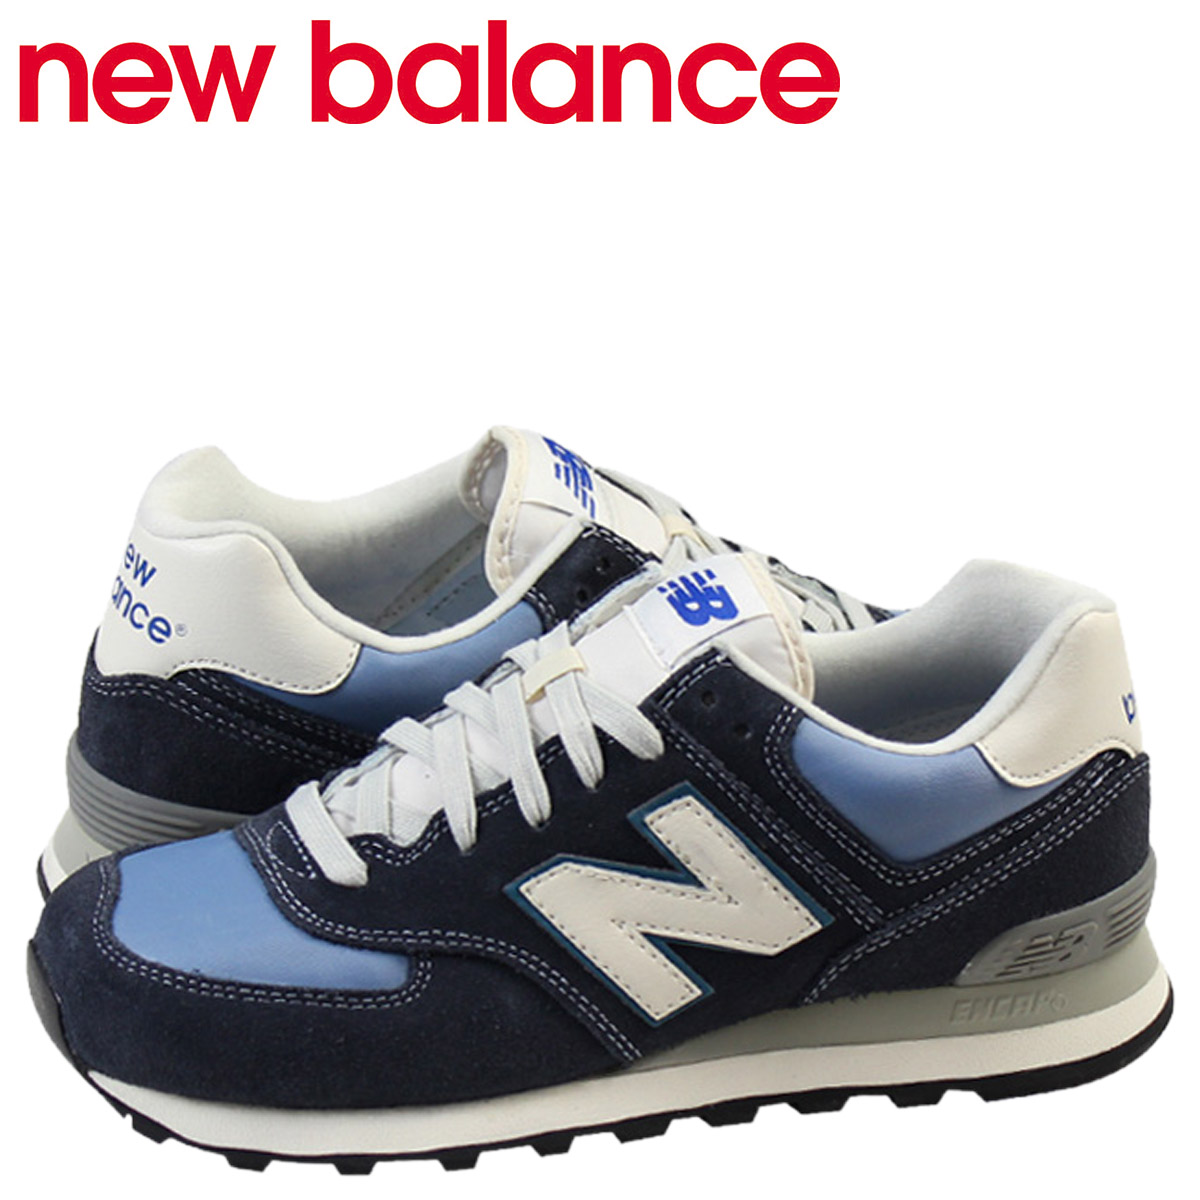 new balance 574 online shop